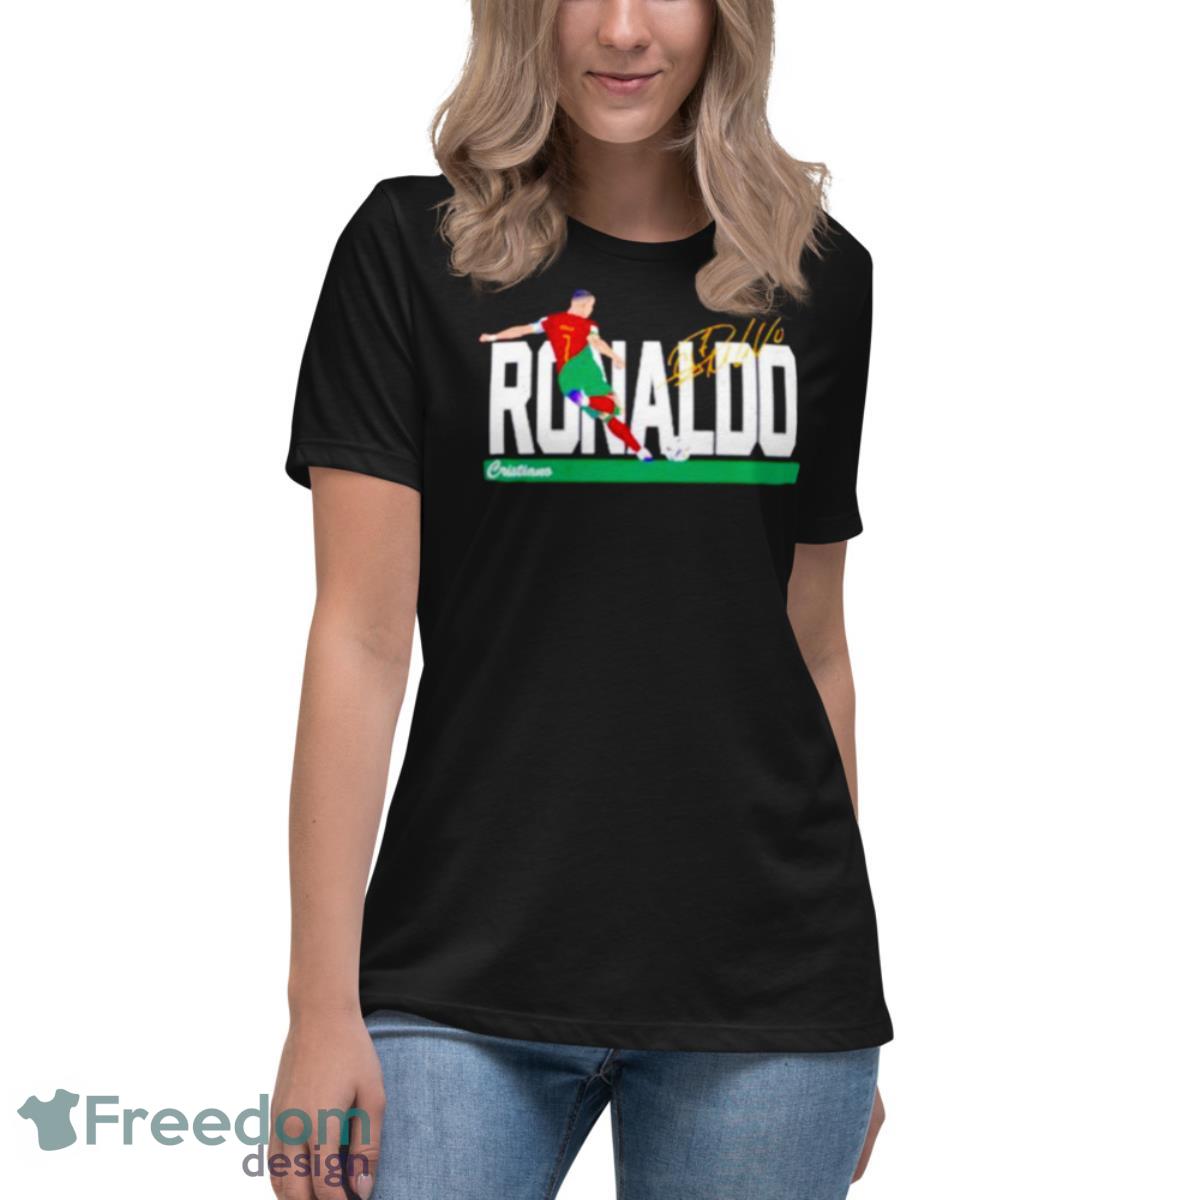 women's ronaldo shirt